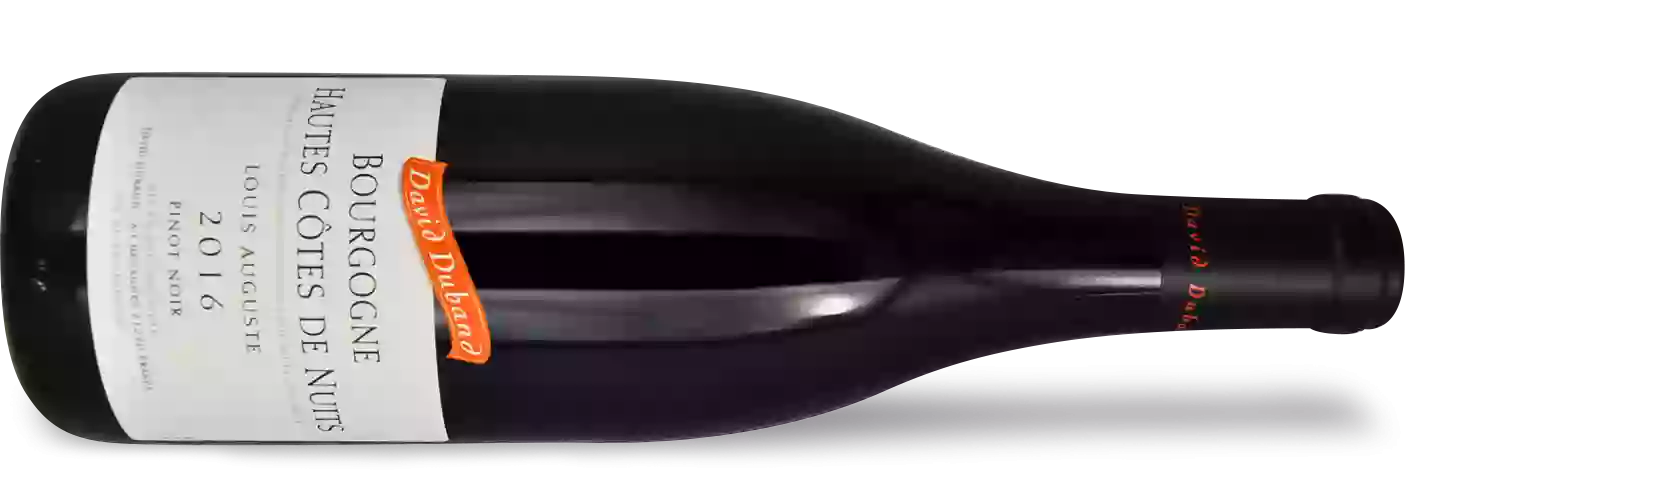 Winery David Duband - Cuvée Bourgogne Hautes-Côtes de Nuits